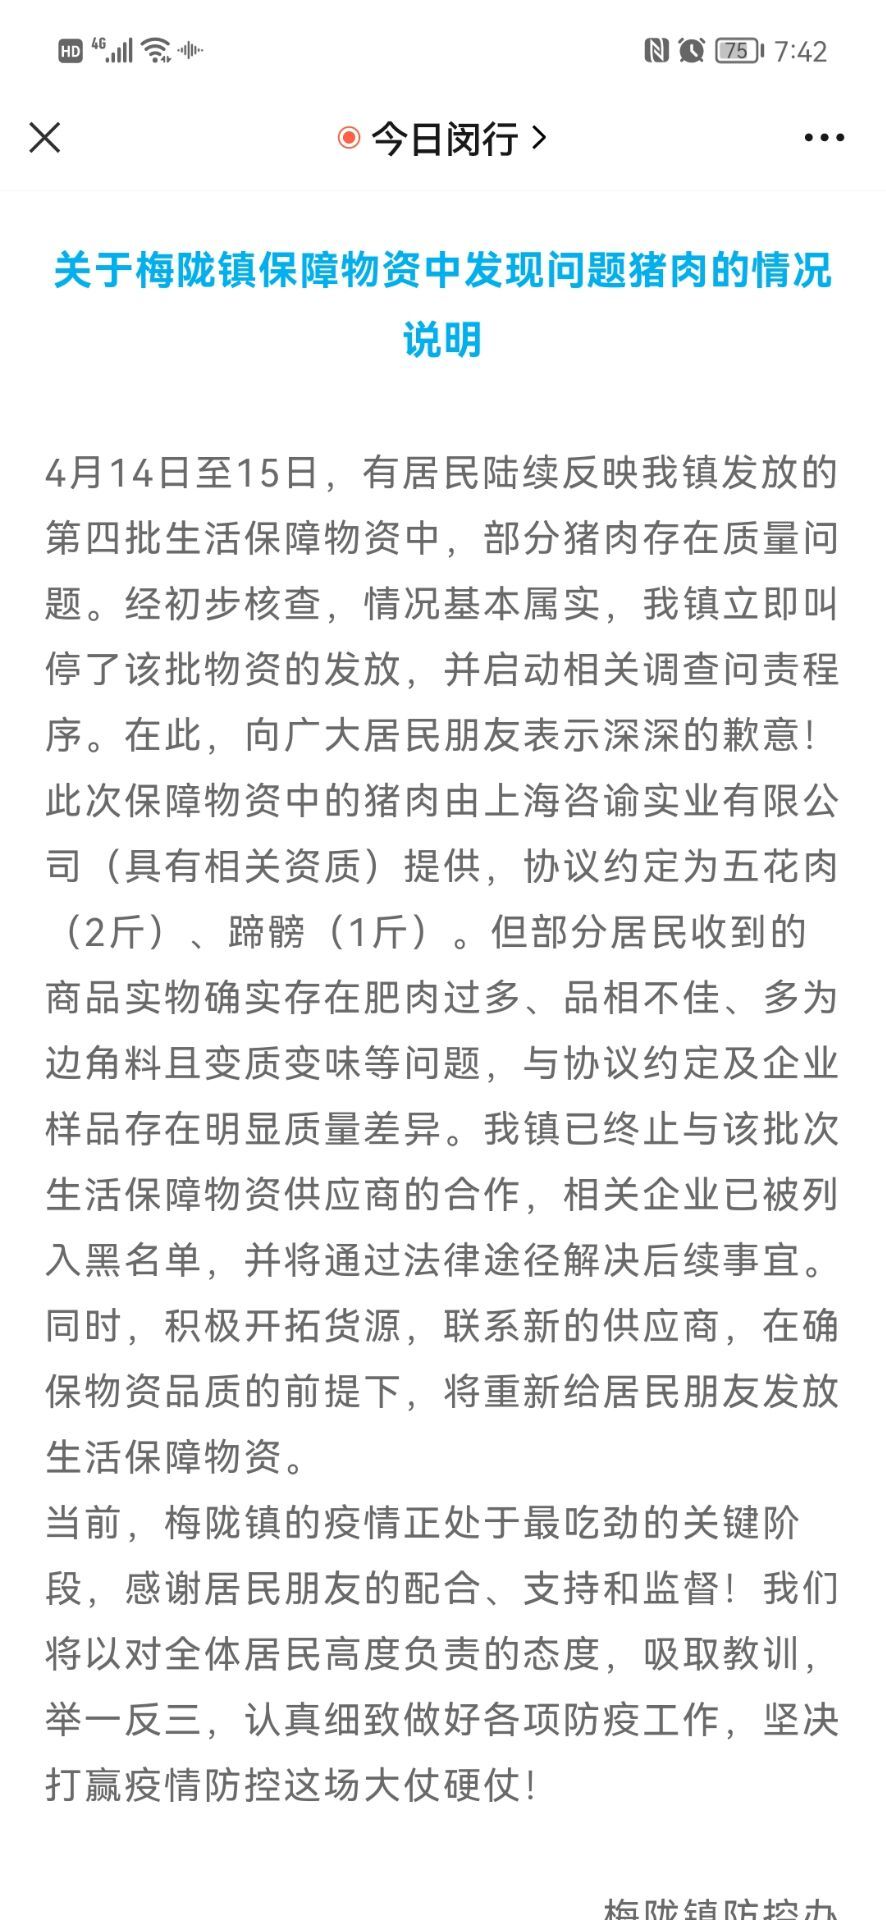 上海梅陇镇就发放变质猪肉启动问责 供货公司法定代表人：事前不知公司成为供应商